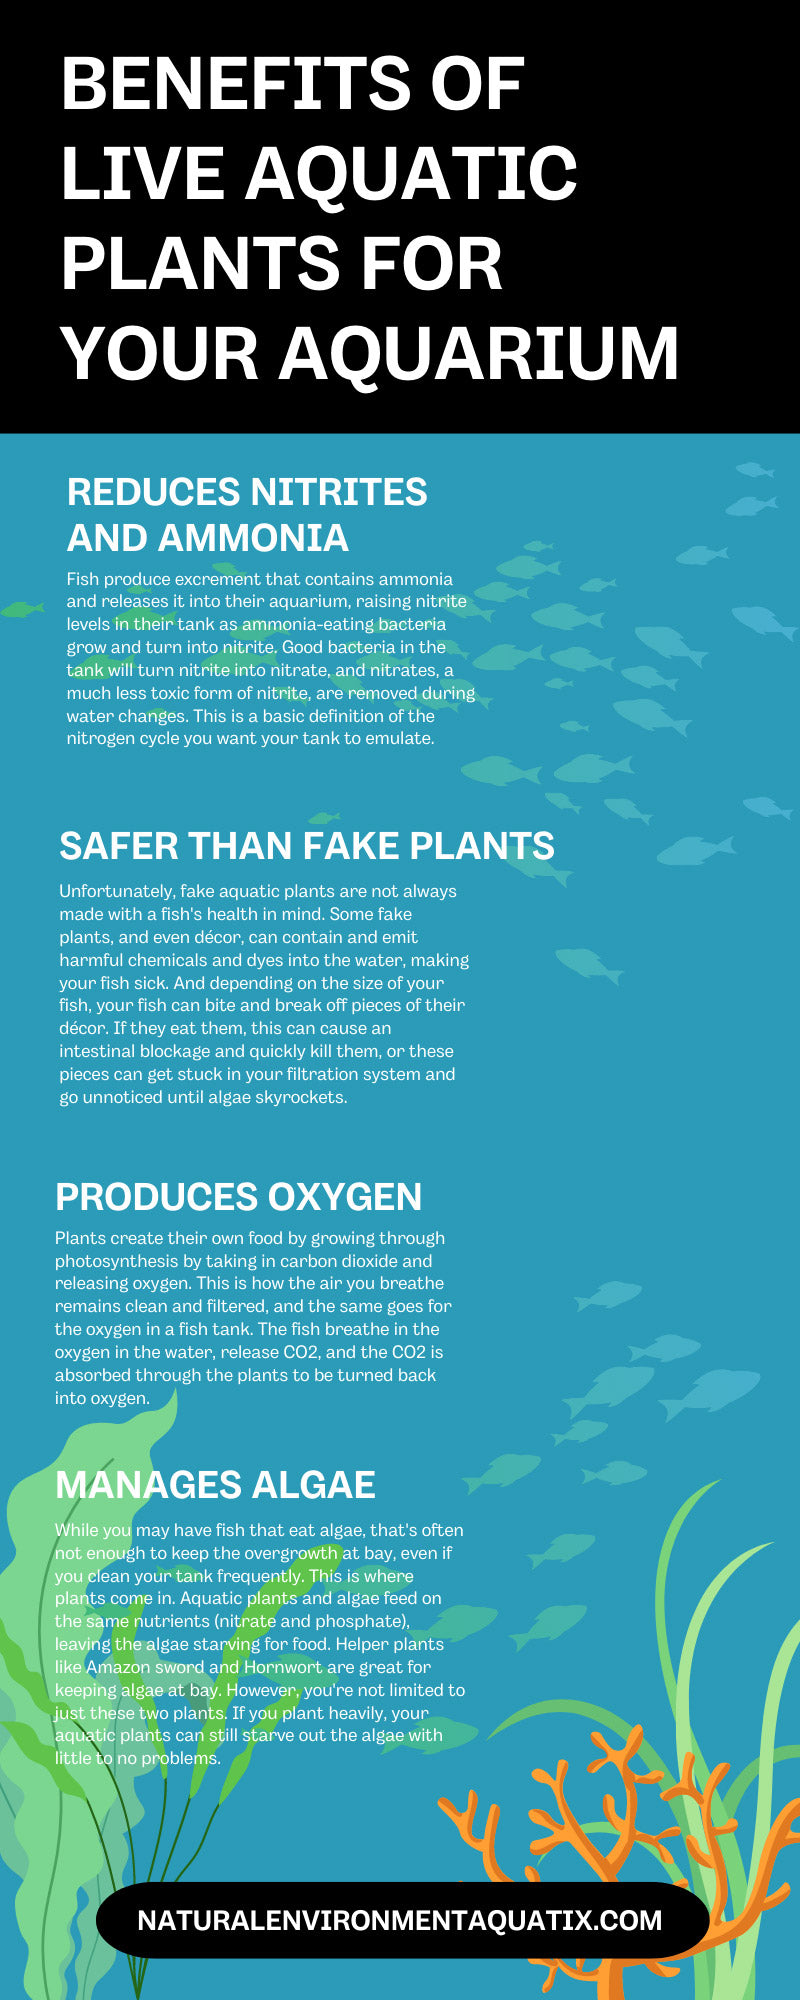 7 Benefits of Live Aquatic Plants for Your Aquarium